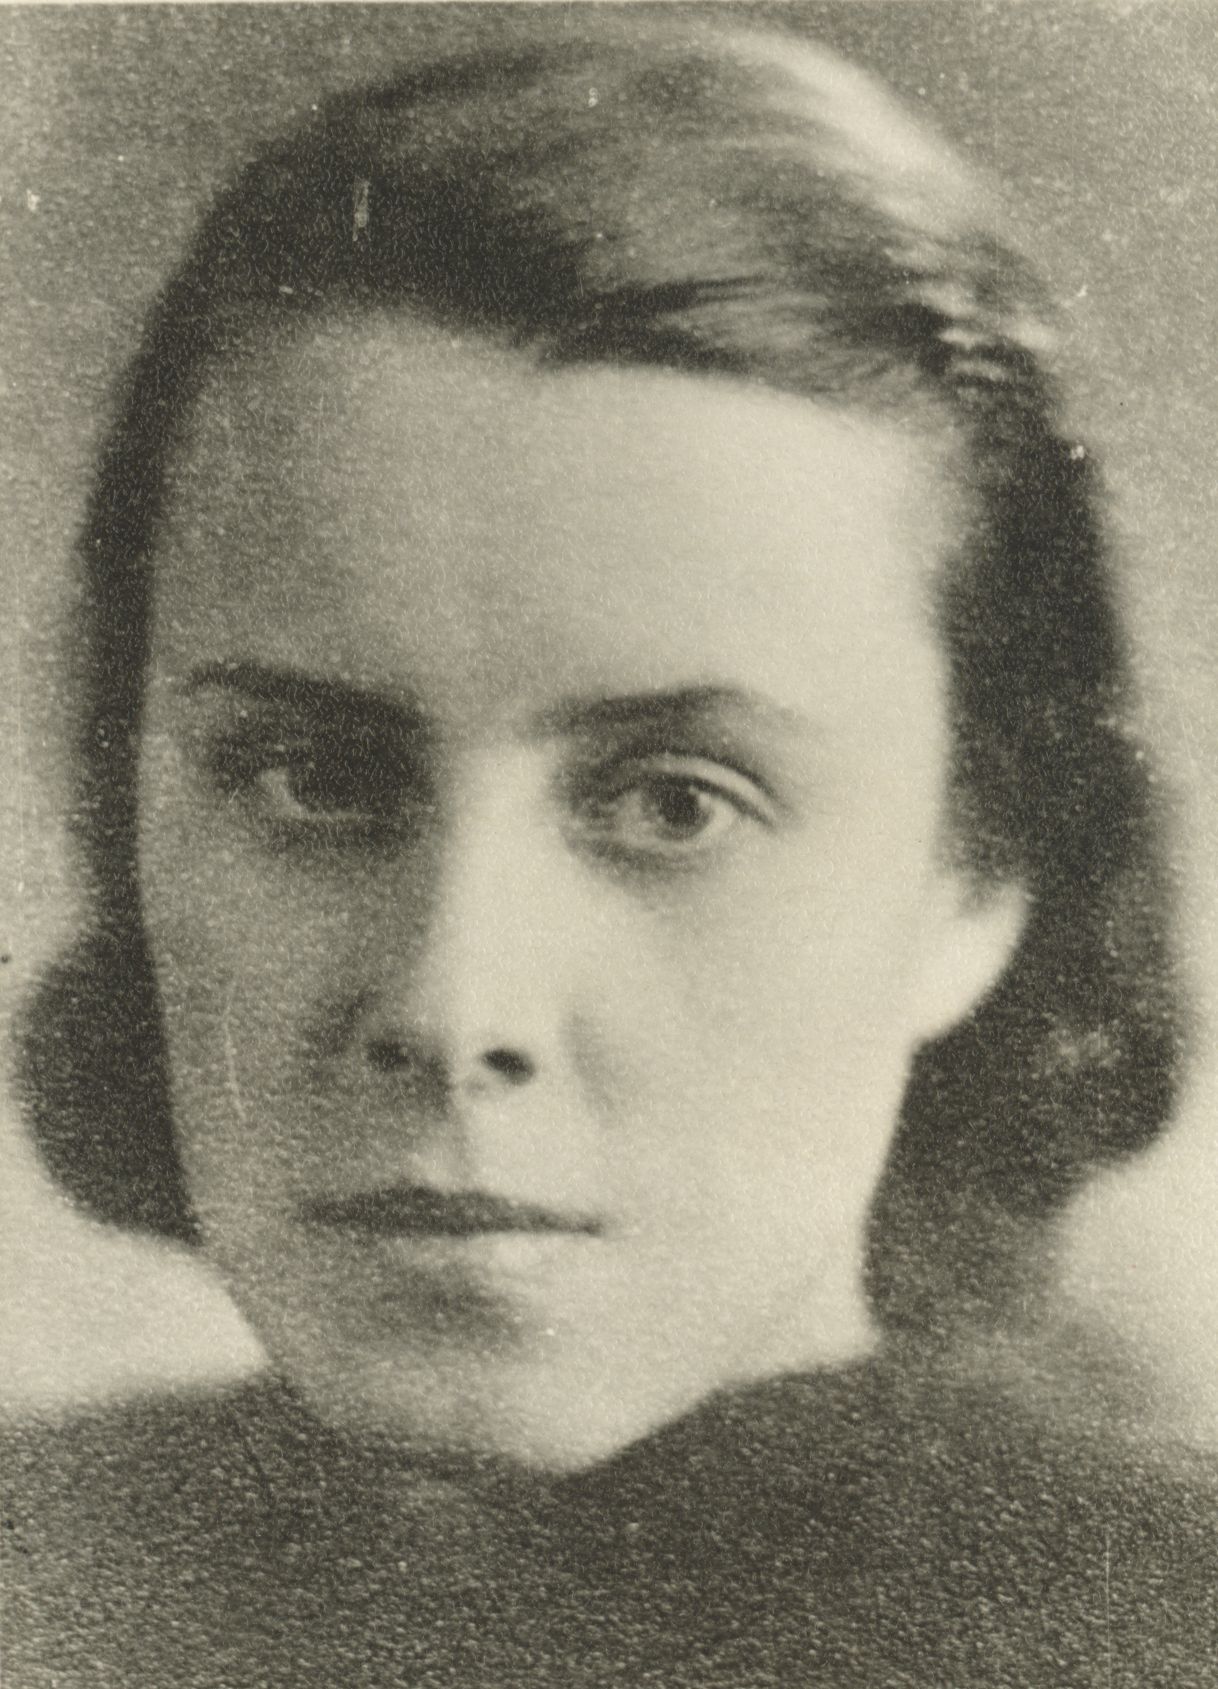 Jaan Kärner's daughter Eha Kärner-Tammemägi in 1942